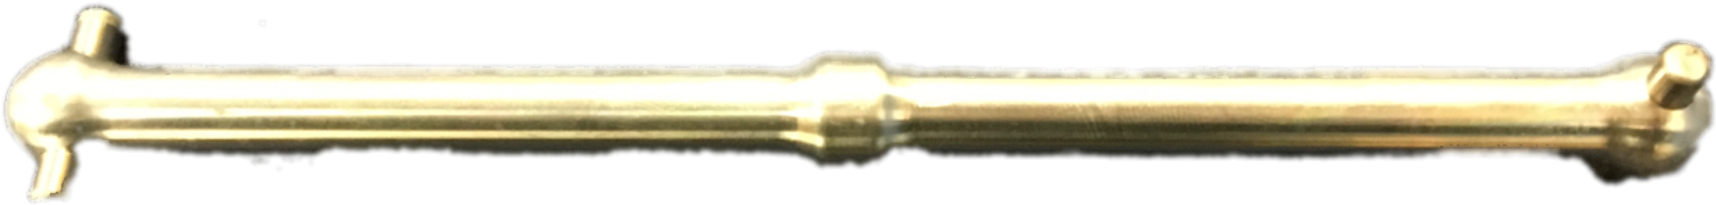 Golden Dog Bone Isolated PNG image